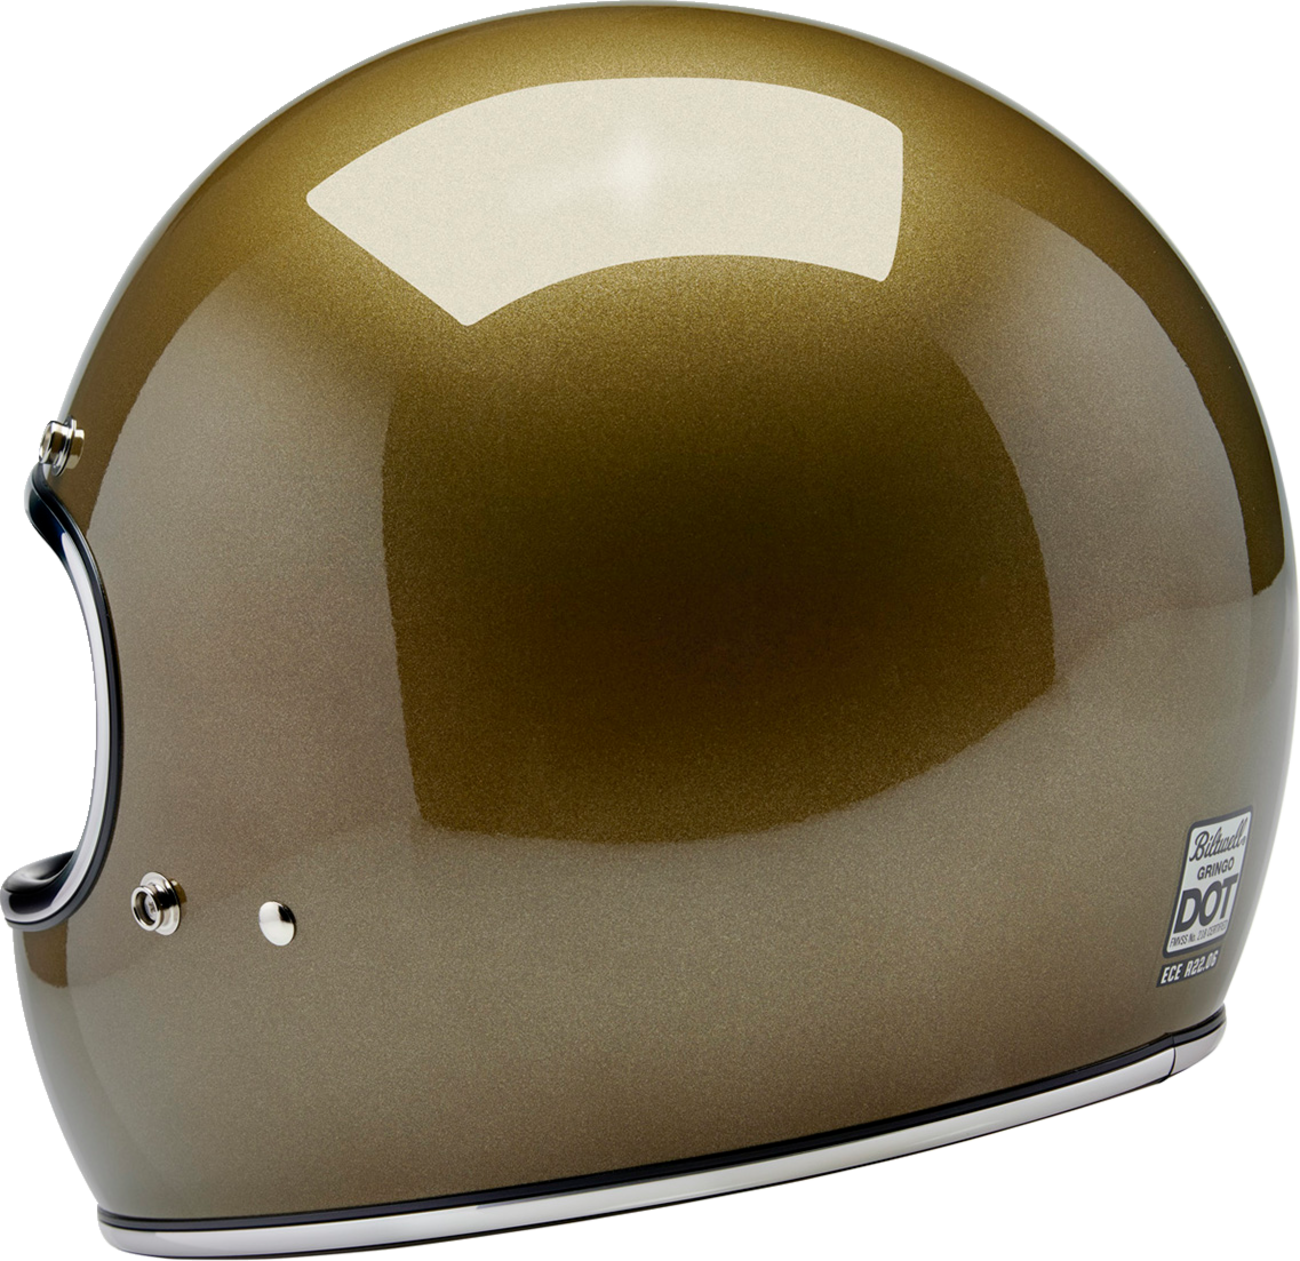 BILTWELL Gringo Helmet - Ugly Gold - 2XL 1002-363-506